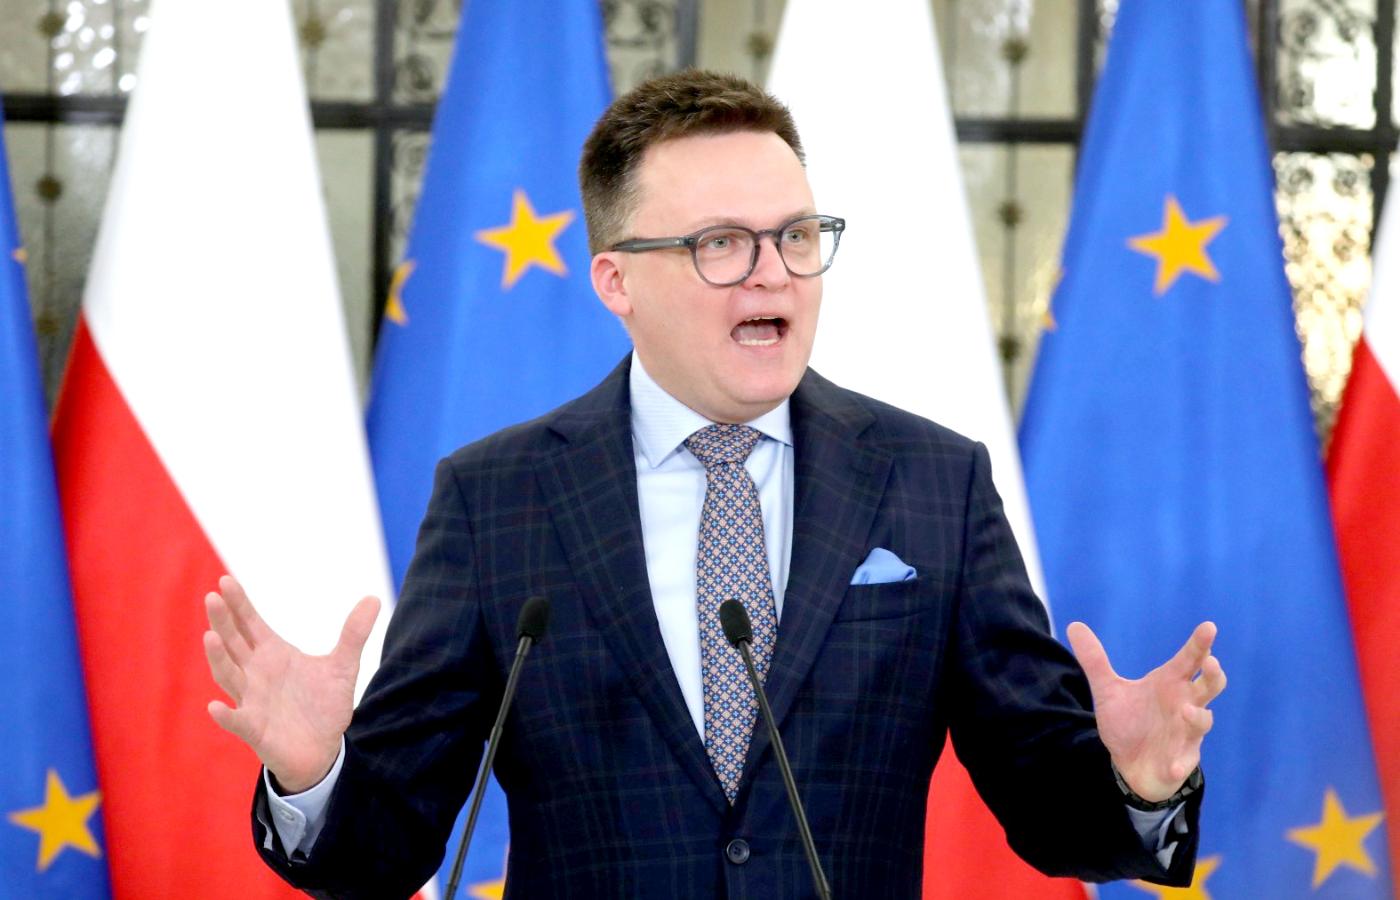 Marszałek Szymon Hołownia w Sejmie. Trzecia Droga, sojusz Polski 2050 i PSL, zyskał w sondażach od wyborów 3 pkt proc.